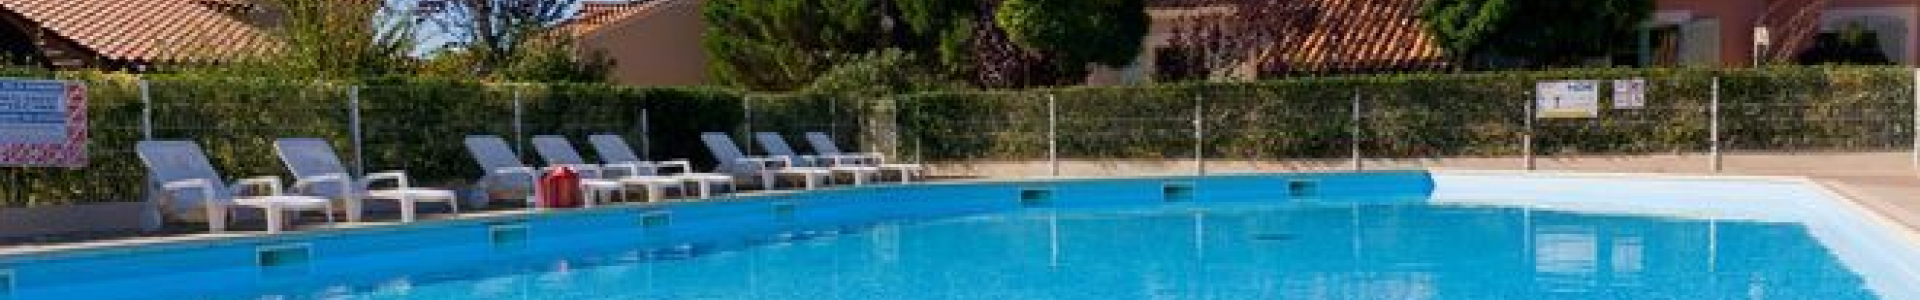 Madame Vacances : 8j/7n en résidences avec piscine & bord de mer, jusqu'à - 53%